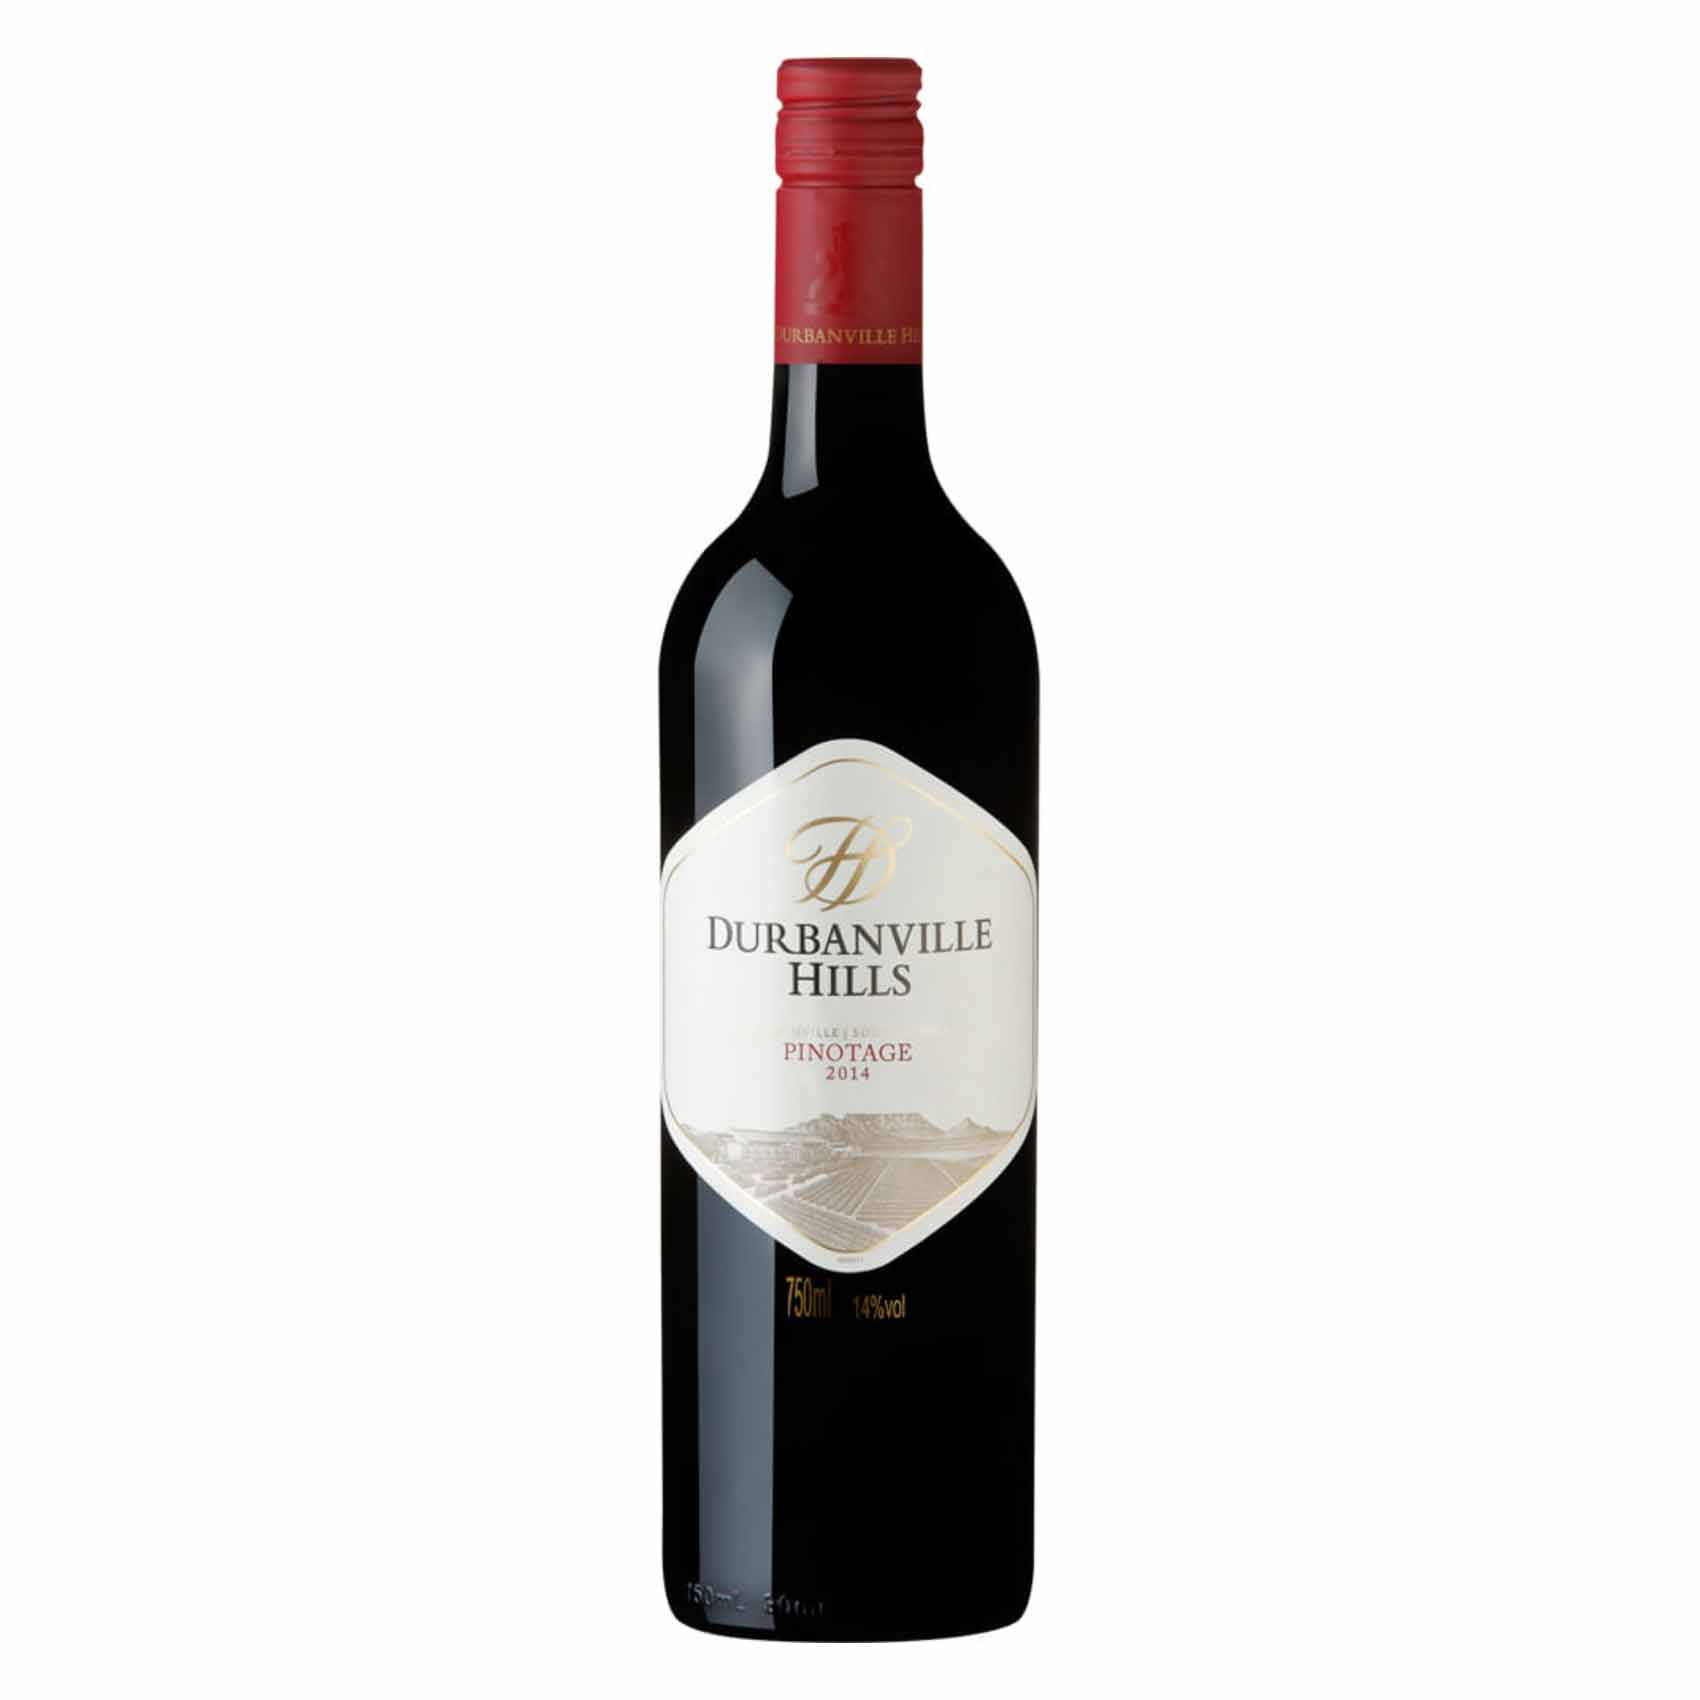 Durbanville Hills Pinotage Wine 750Ml